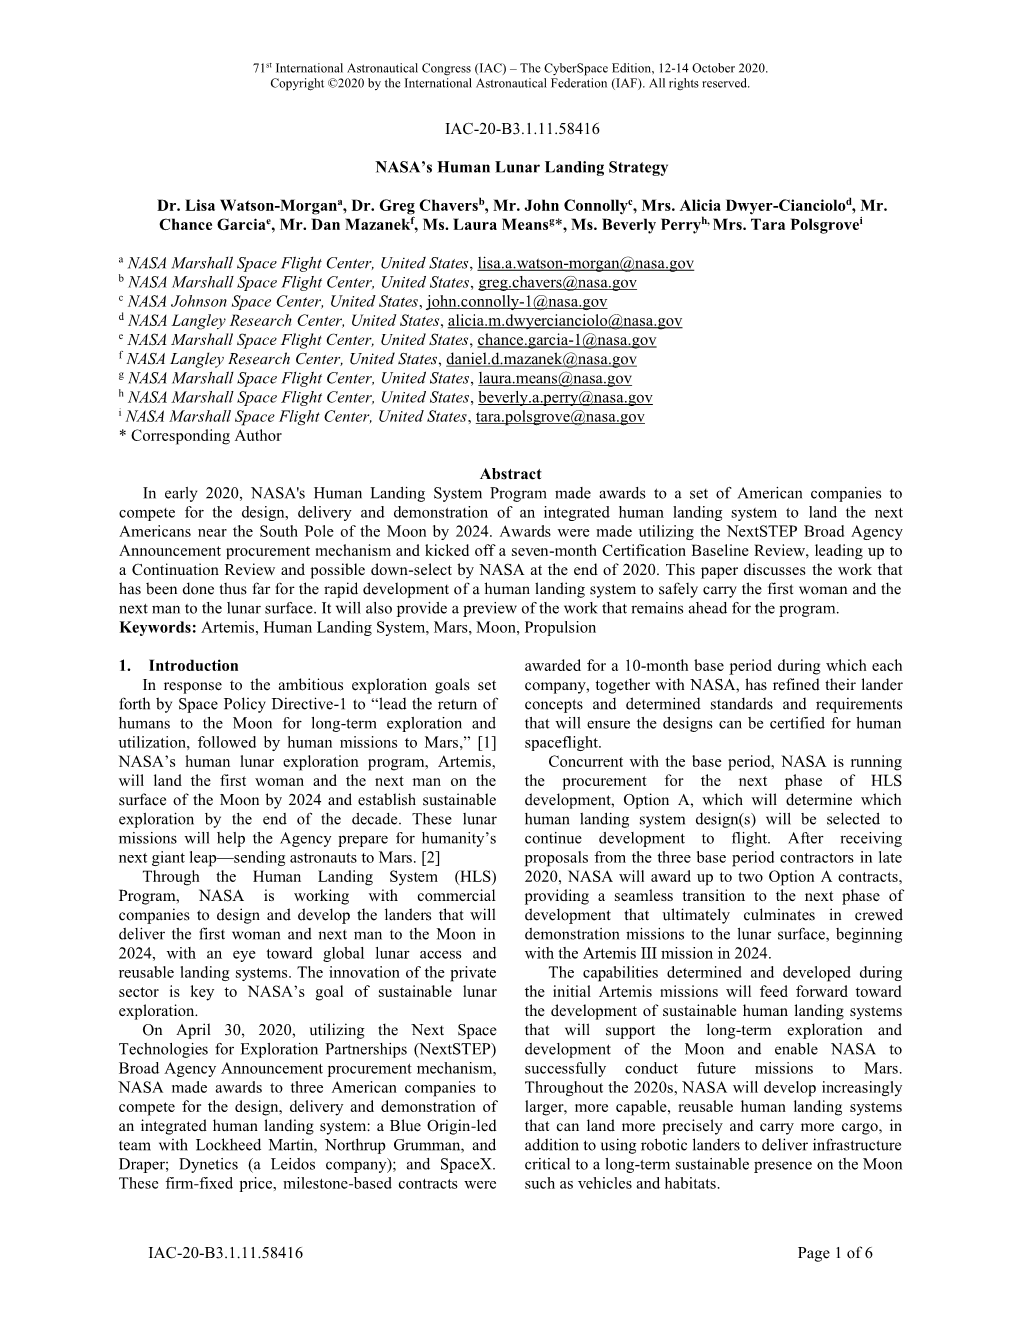 IAC-20-B3.1.11.58416 Page 1 of 6 IAC-20-B3.1.11.58416 NASA's